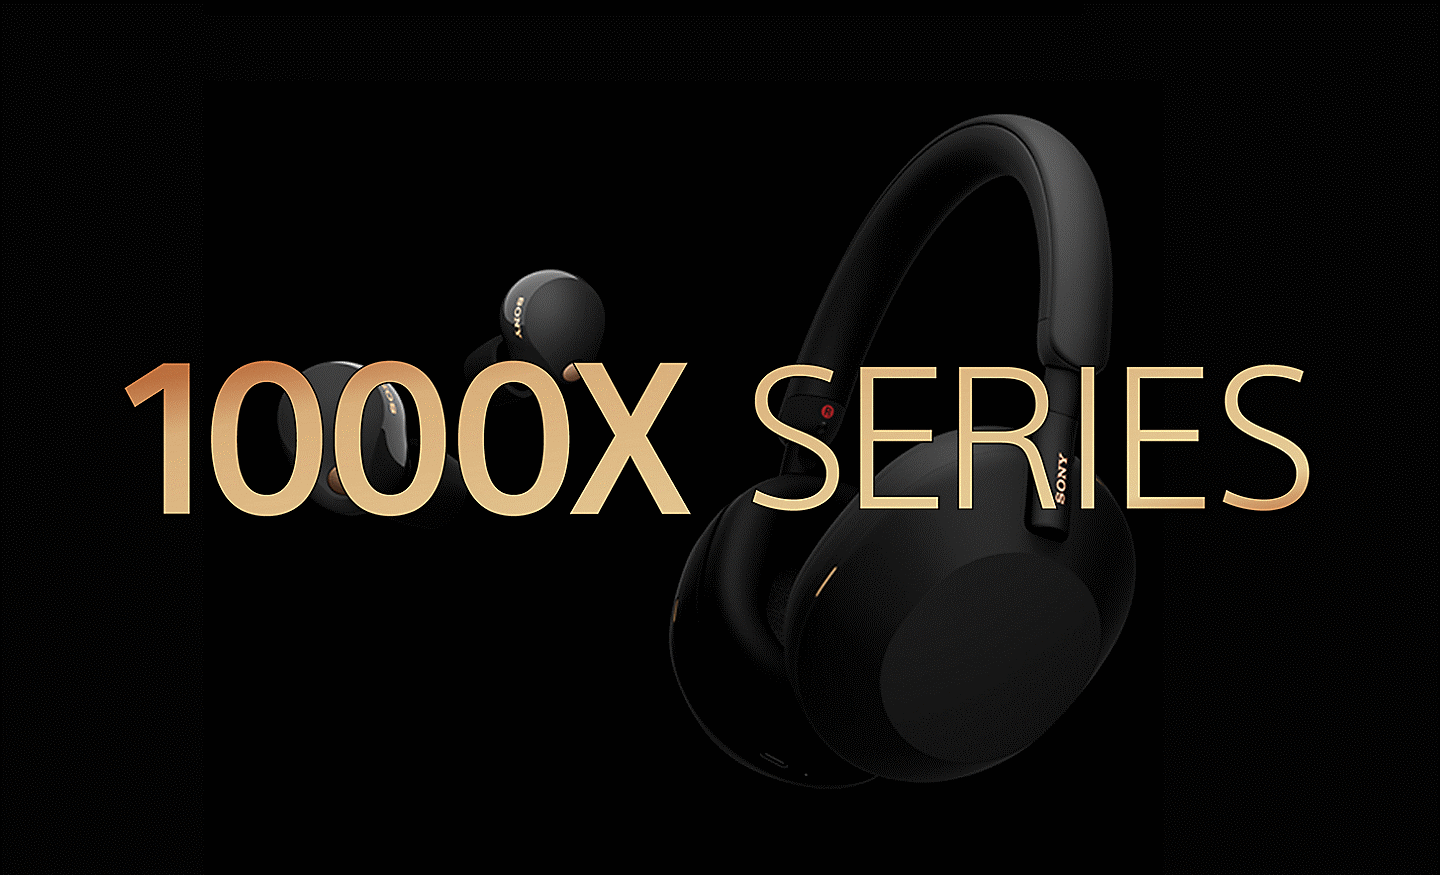 골드톤의 1000X SERIES 텍스트가 앞면에 있고 검은색 배경에 놓인 소니 헤드폰 세트 2개의 이미지